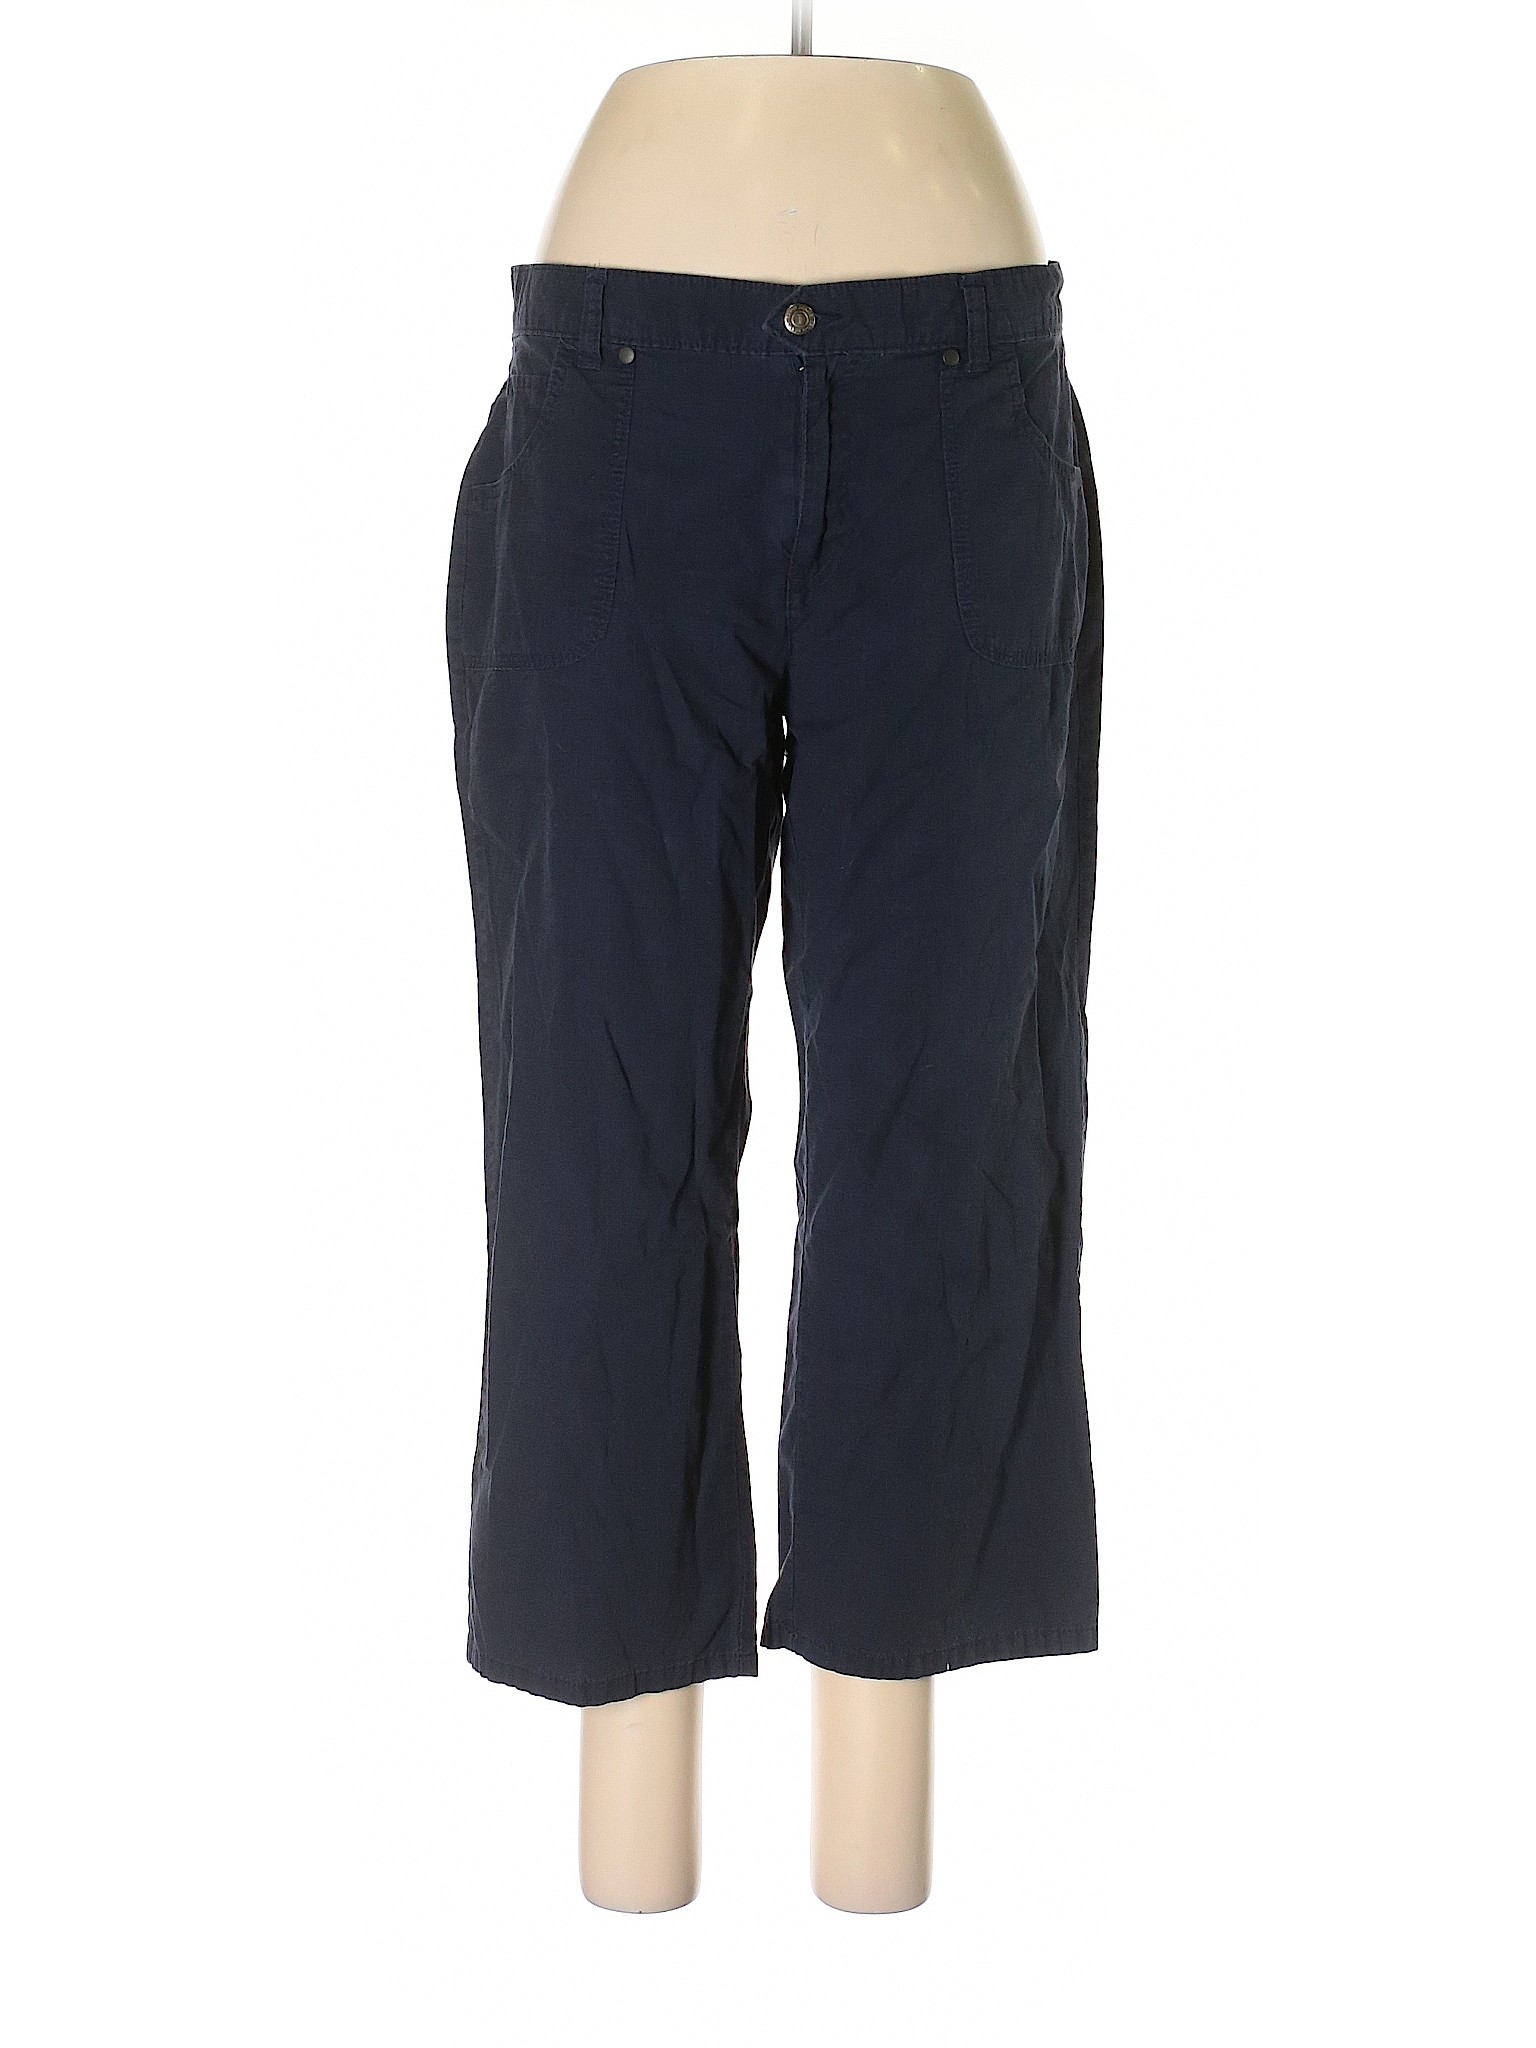 IZOD Women Blue Casual Pants 12 | eBay